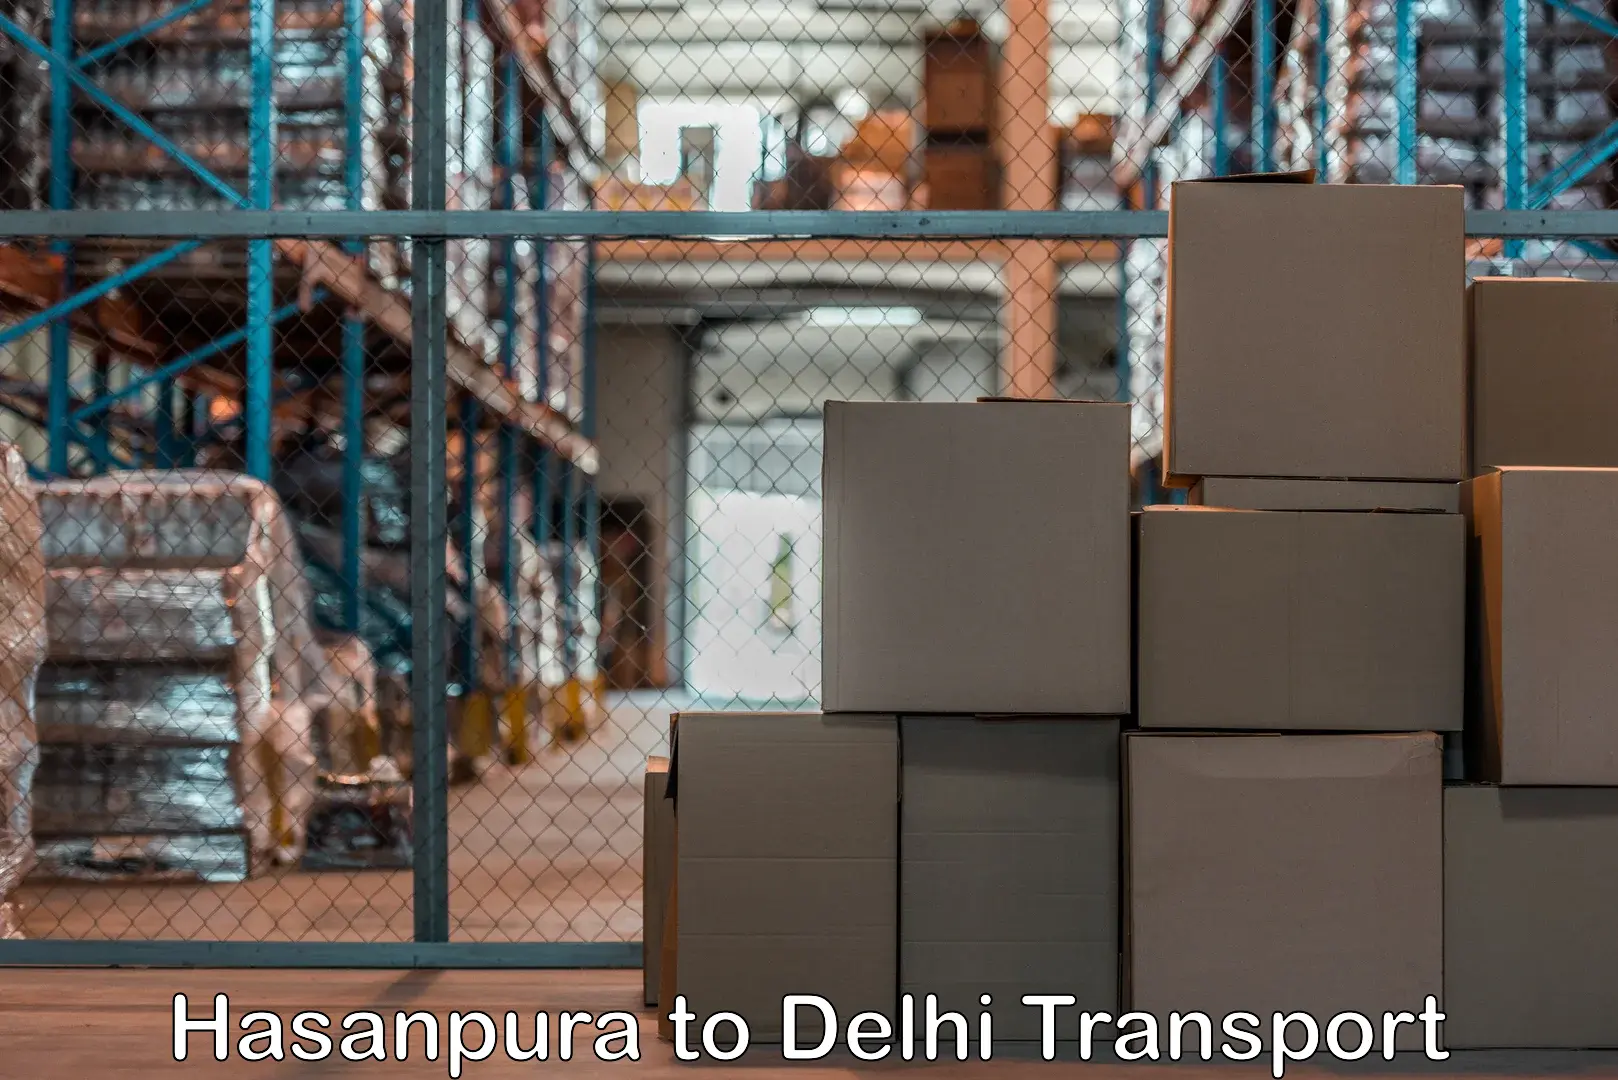 India truck logistics services Hasanpura to Delhi